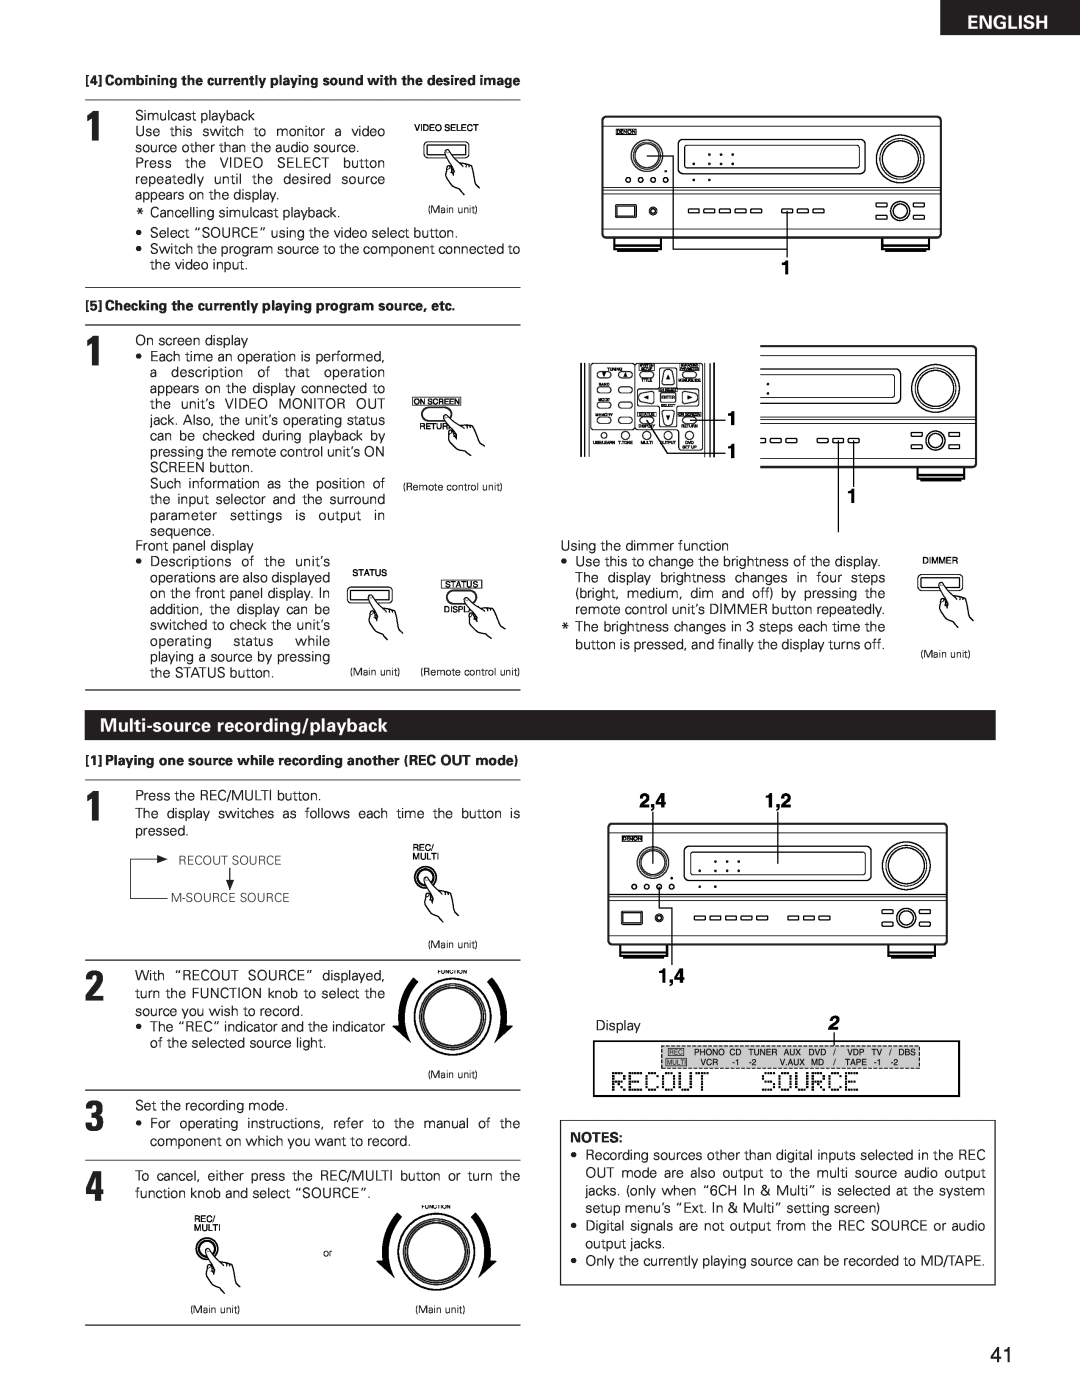 Denon AVR-3300 manual Multi-sourcerecording/playback, English 